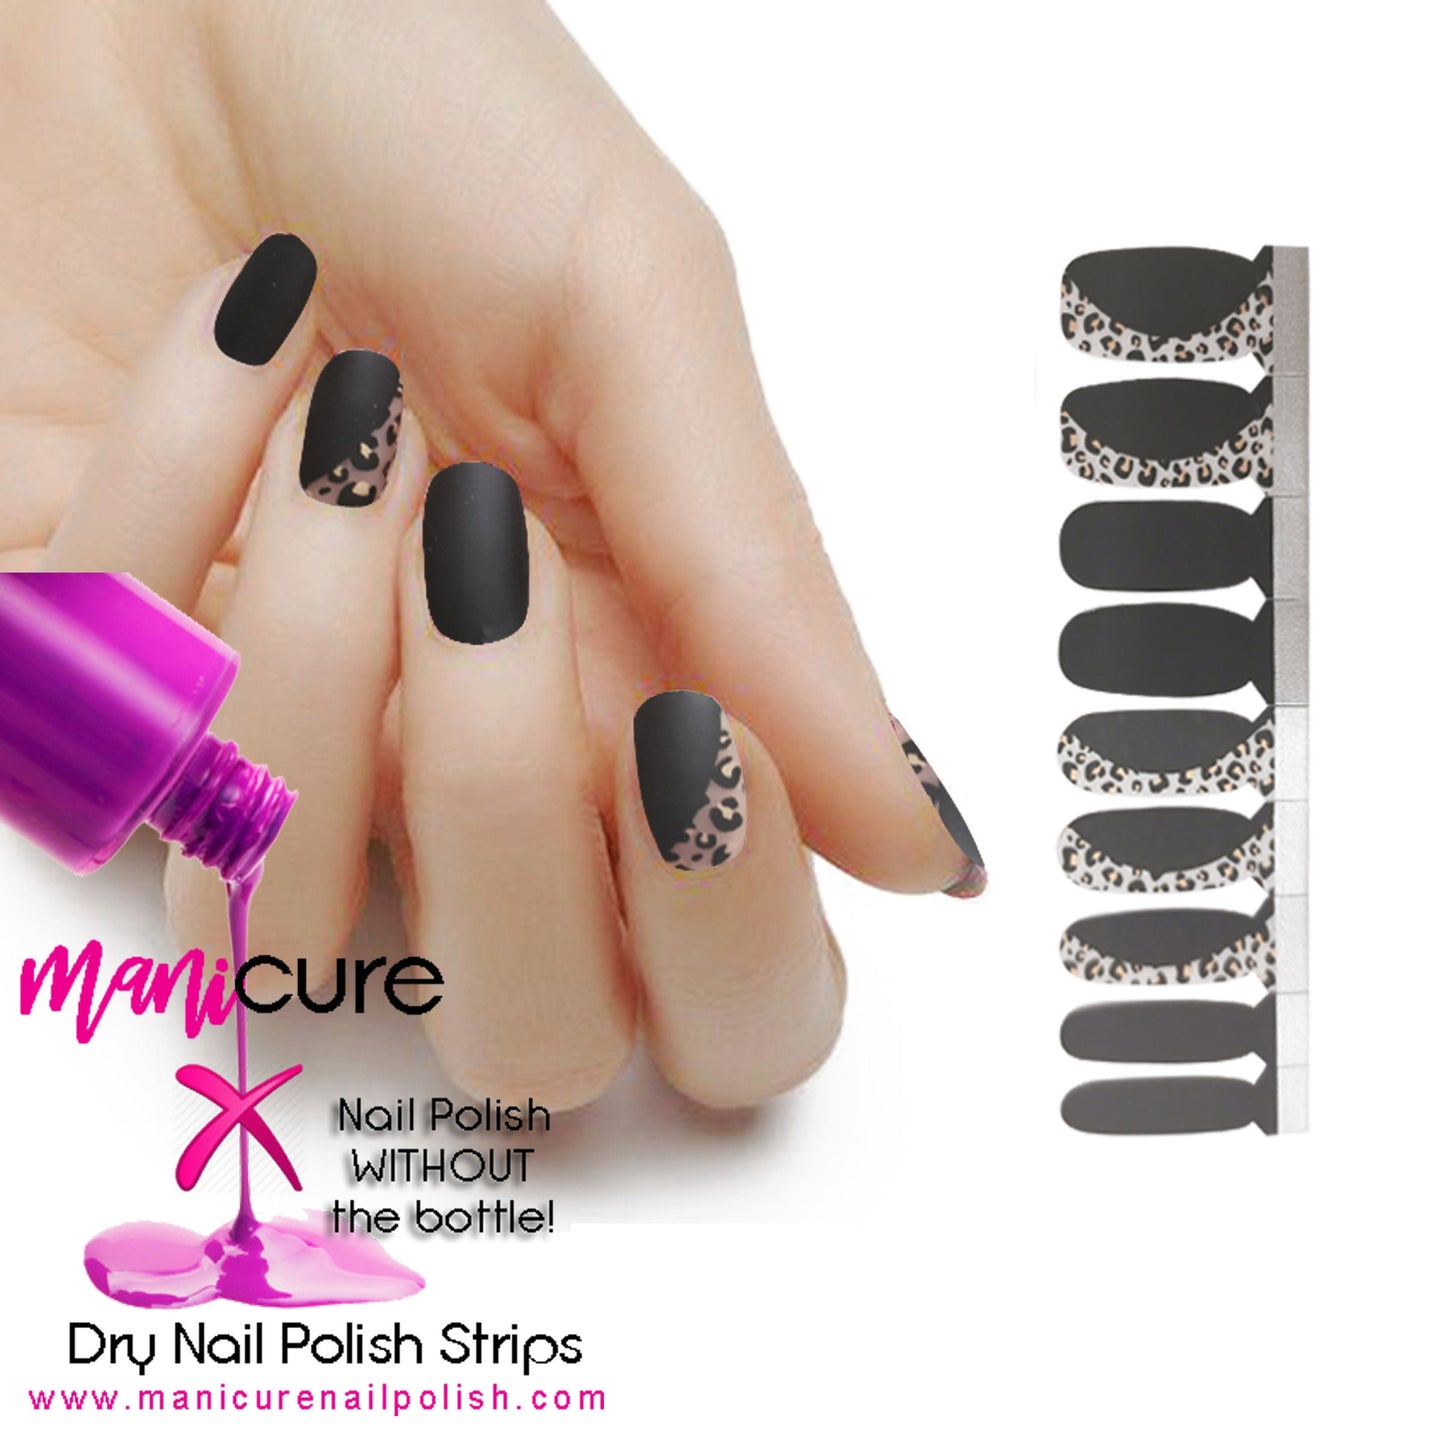 Matte Finish Black Leopard, ManiCURE  Real Nail Polish Strips, Dry Nail Polish, Nail Wraps, Stickers, Long Lasting, Non Toxic - manicurenailpolish